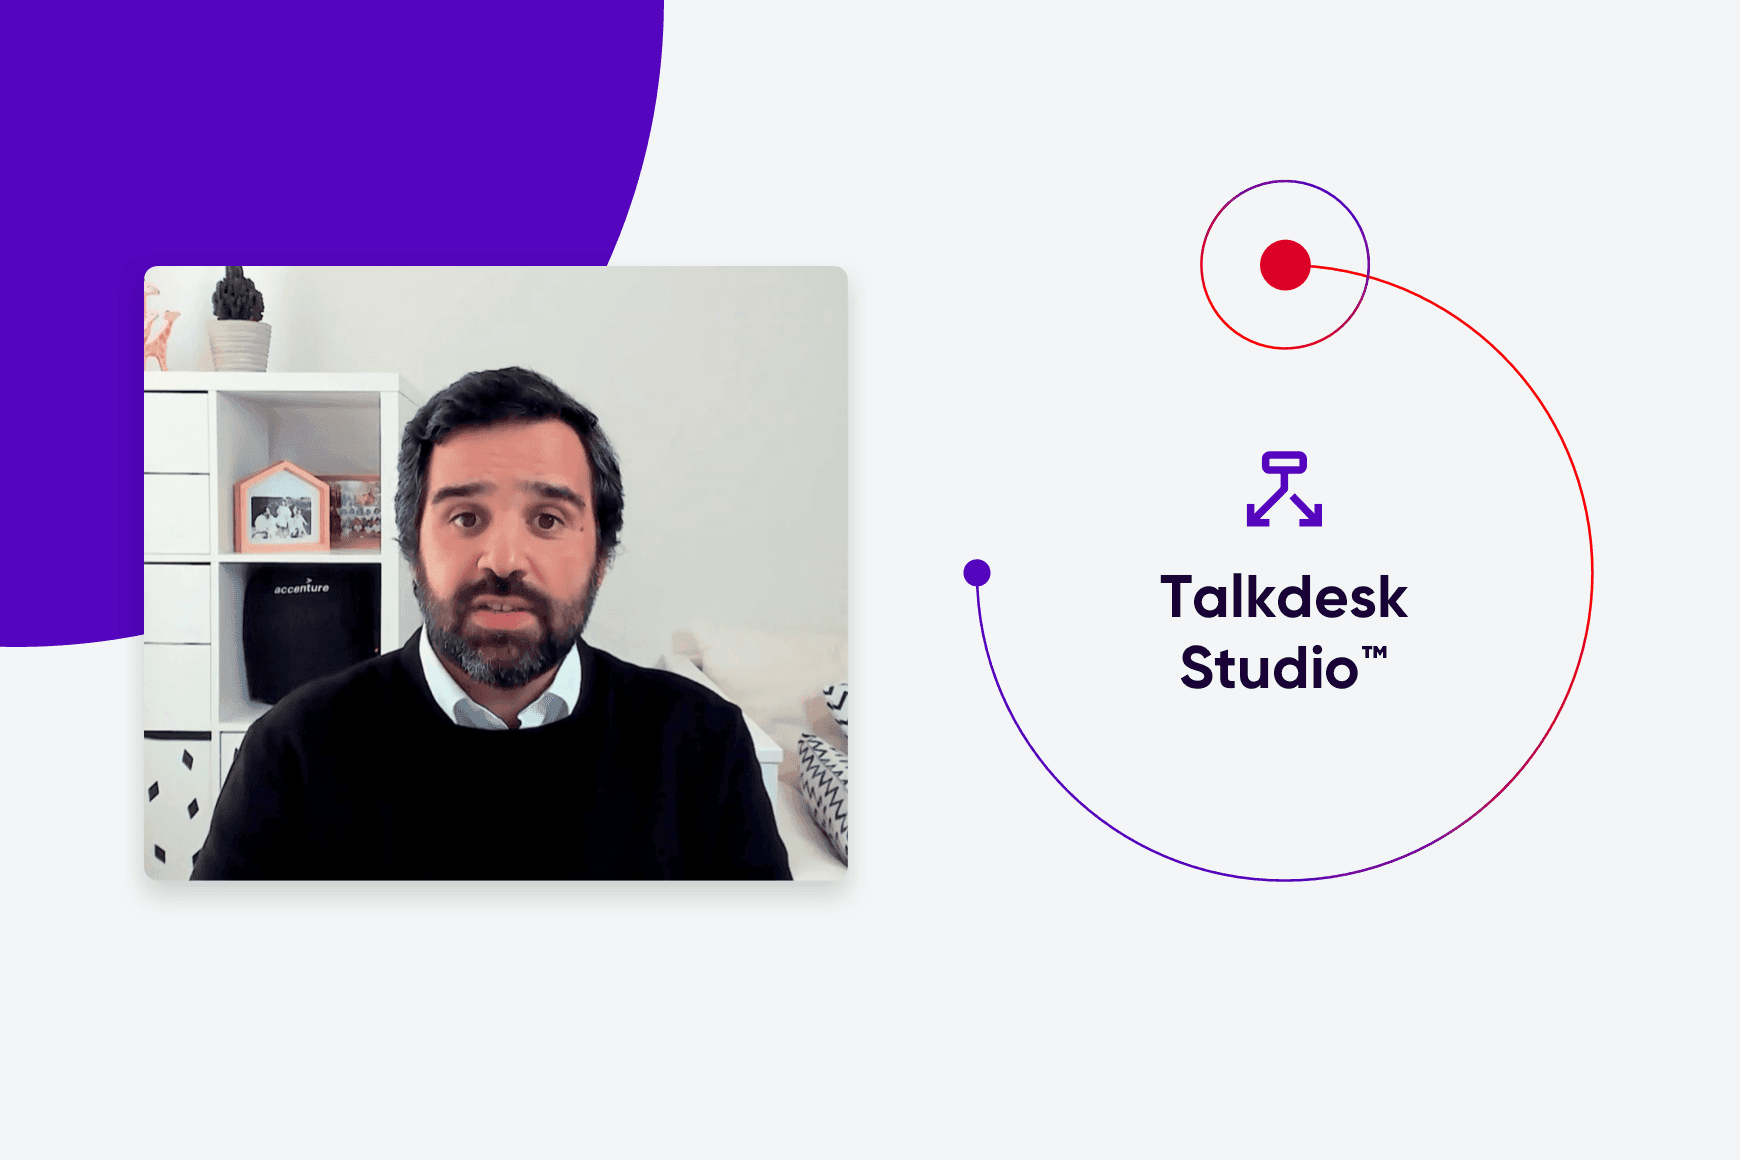 Talkdesk Studio™